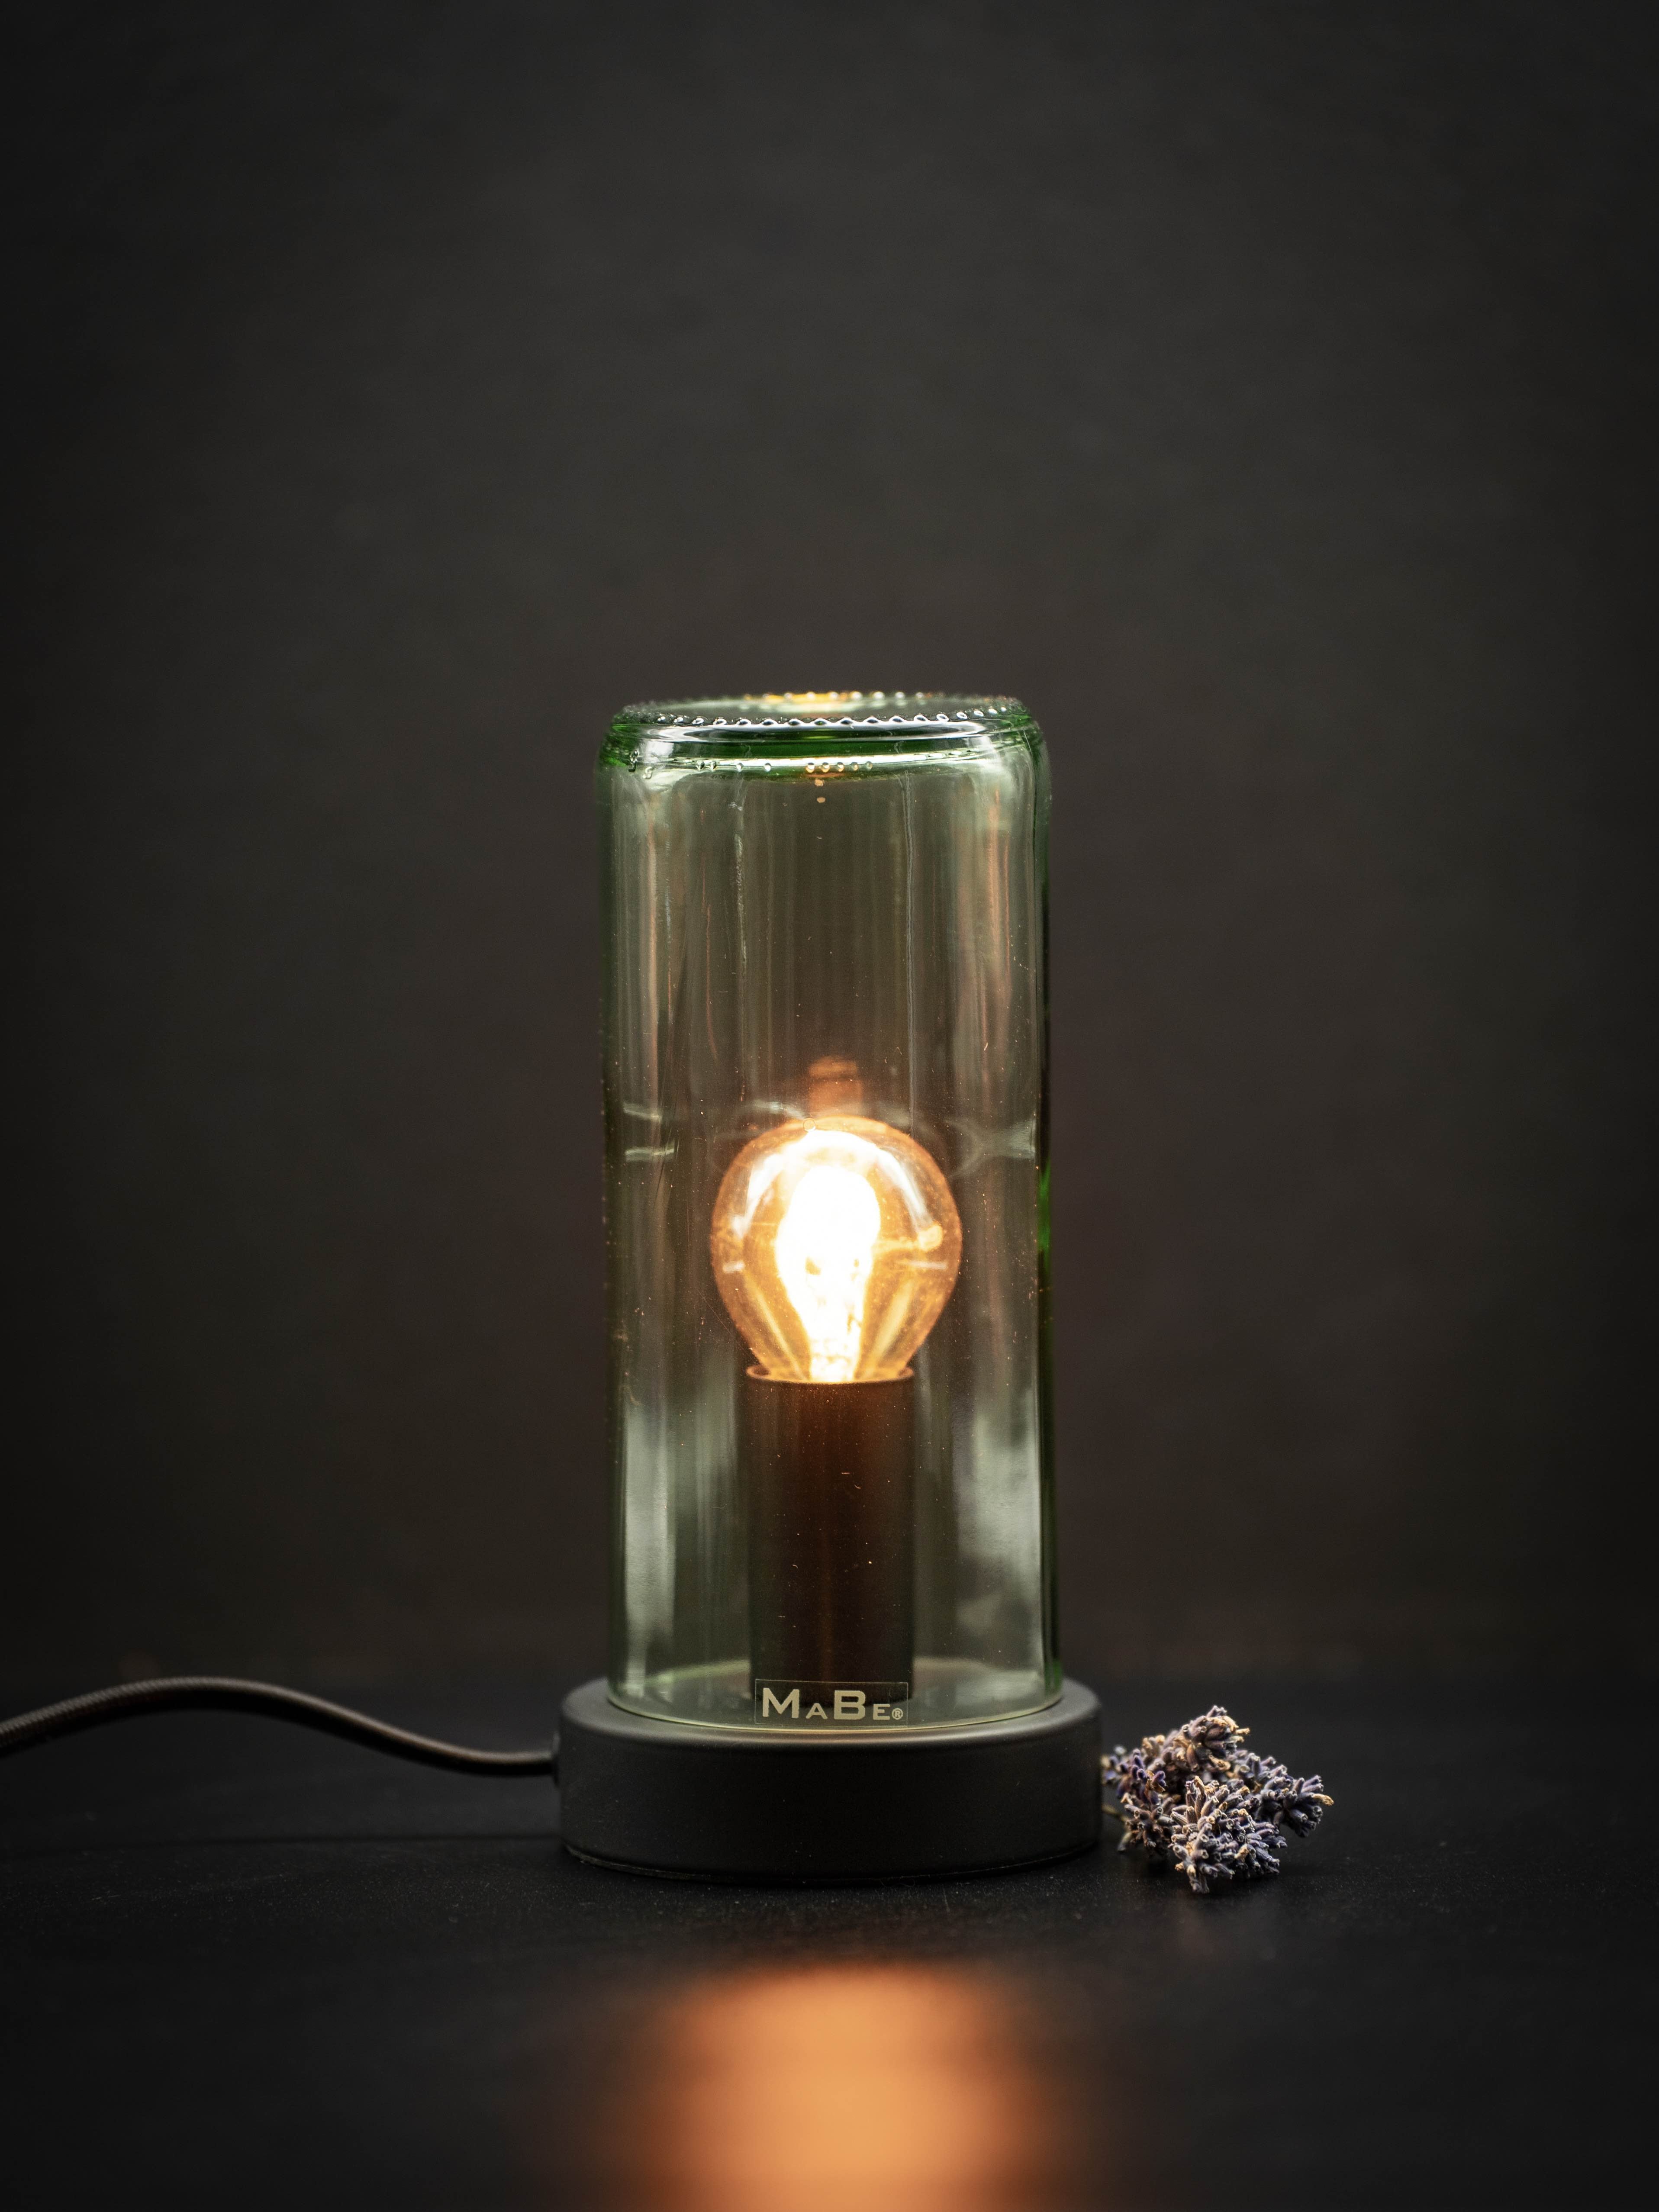 Bauhaus Licht - Tischlampe aus dem Boden der 1l Flasche, 18 cm hoch